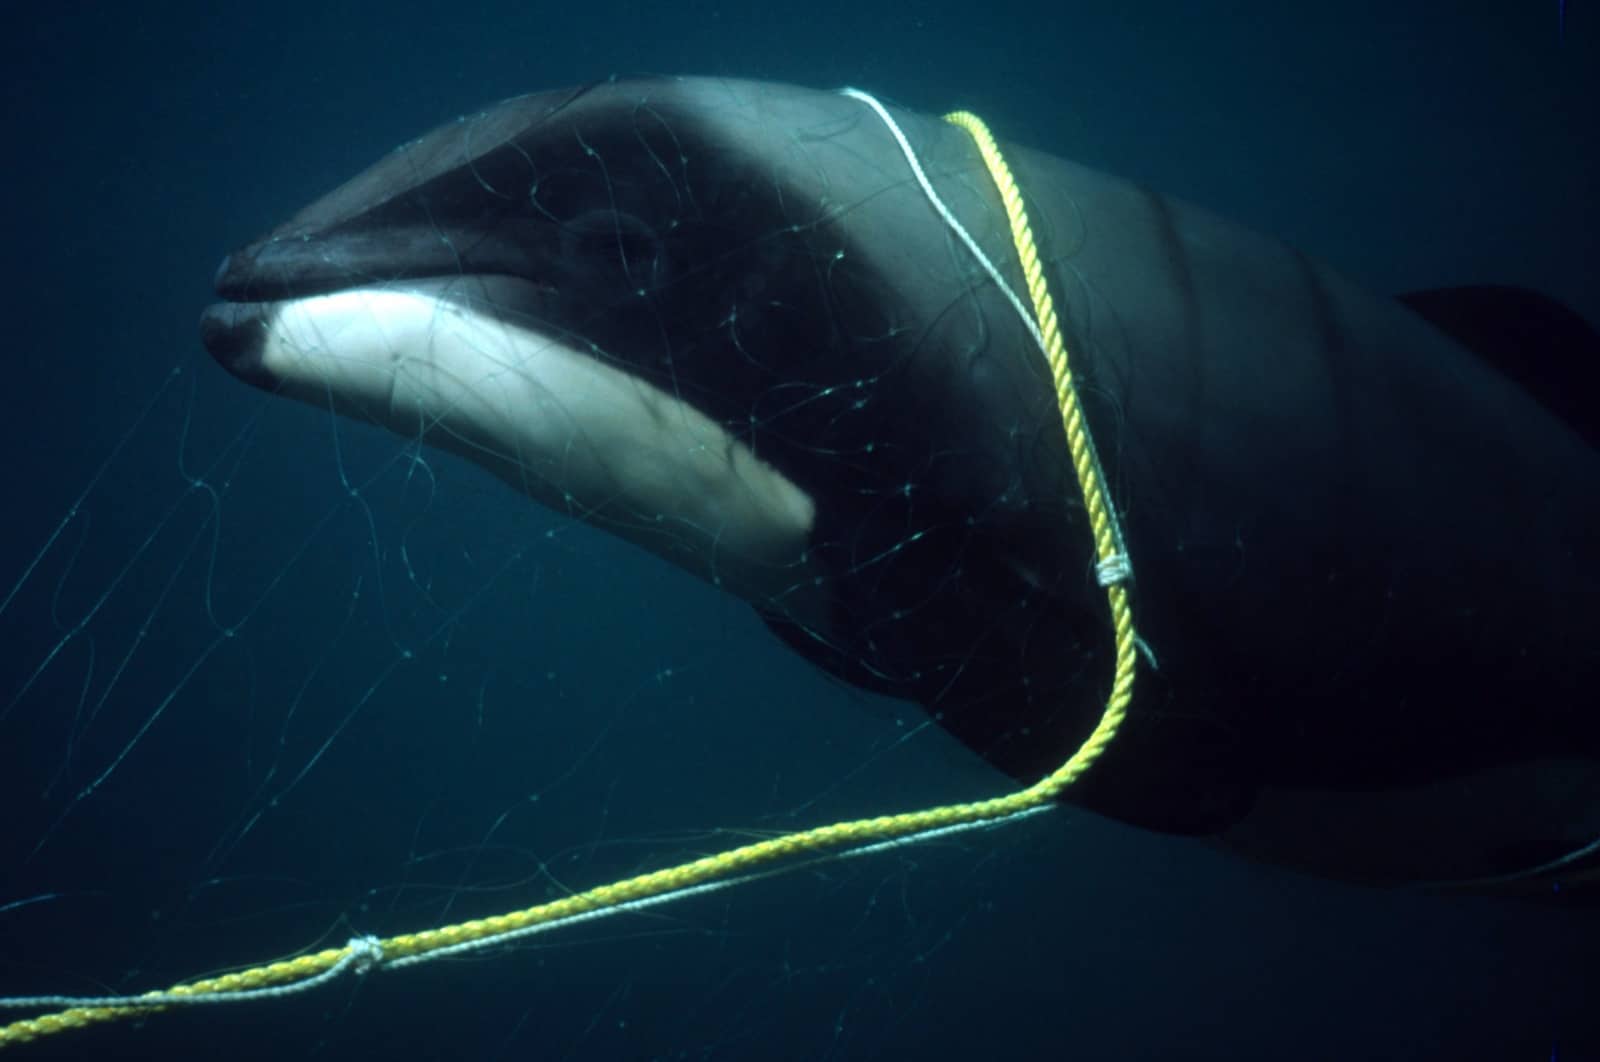 Delfin als Beifang im Netz, © by Stephen Dawson/WWF-Canon